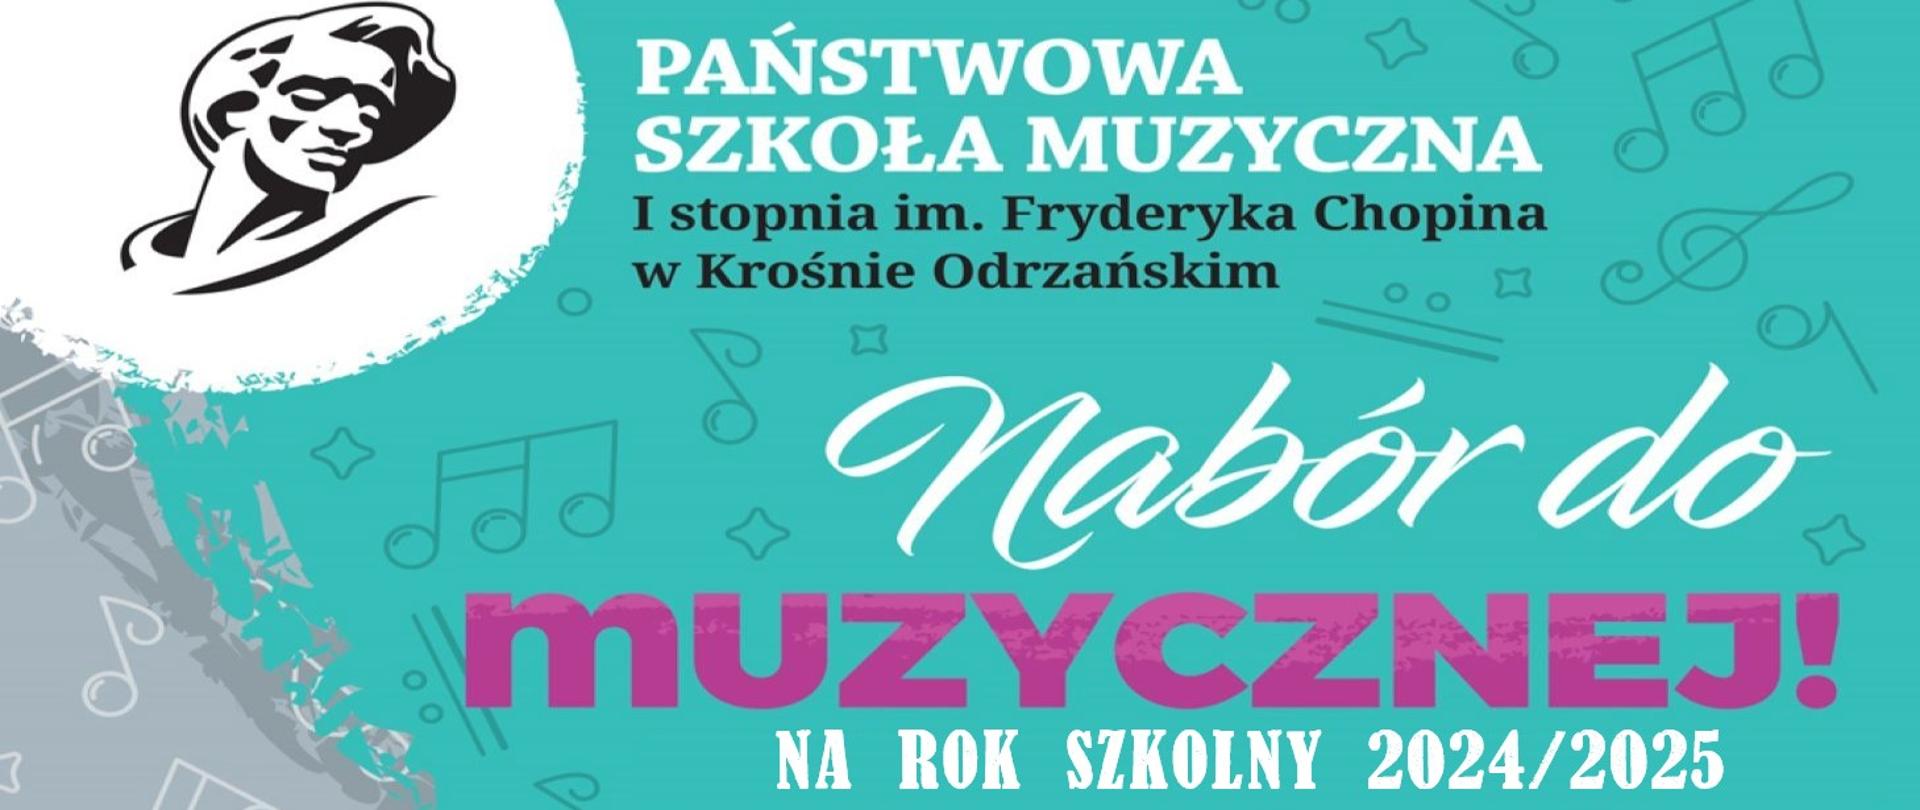 Baner utrzymany jest w kolorystyce seledynowo - szaro - różowej, z głową Fryderyka Chopina, ze swobodnie rozmieszczonymi znakami muzycznymi. Zapowiada on nabór, na rok szkolny 2024/2025 do PSM w Krośnie Odrzańskim.